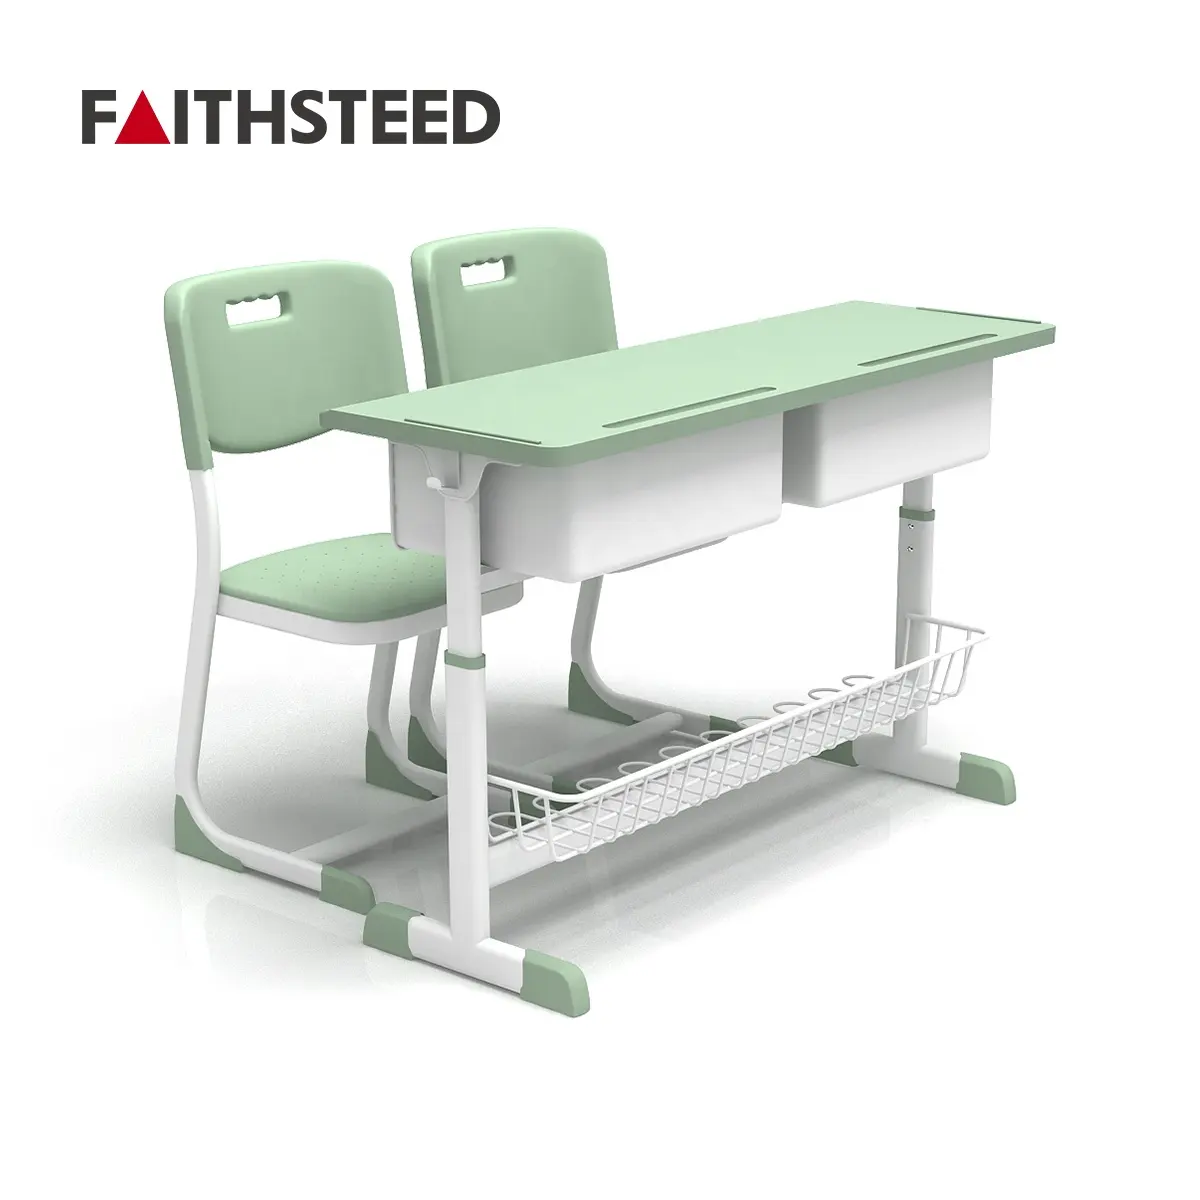 2 인 높이 조절 스쿨 컴퓨터 책상과 의자 세트 더블 시트 플라스틱 PP 환경